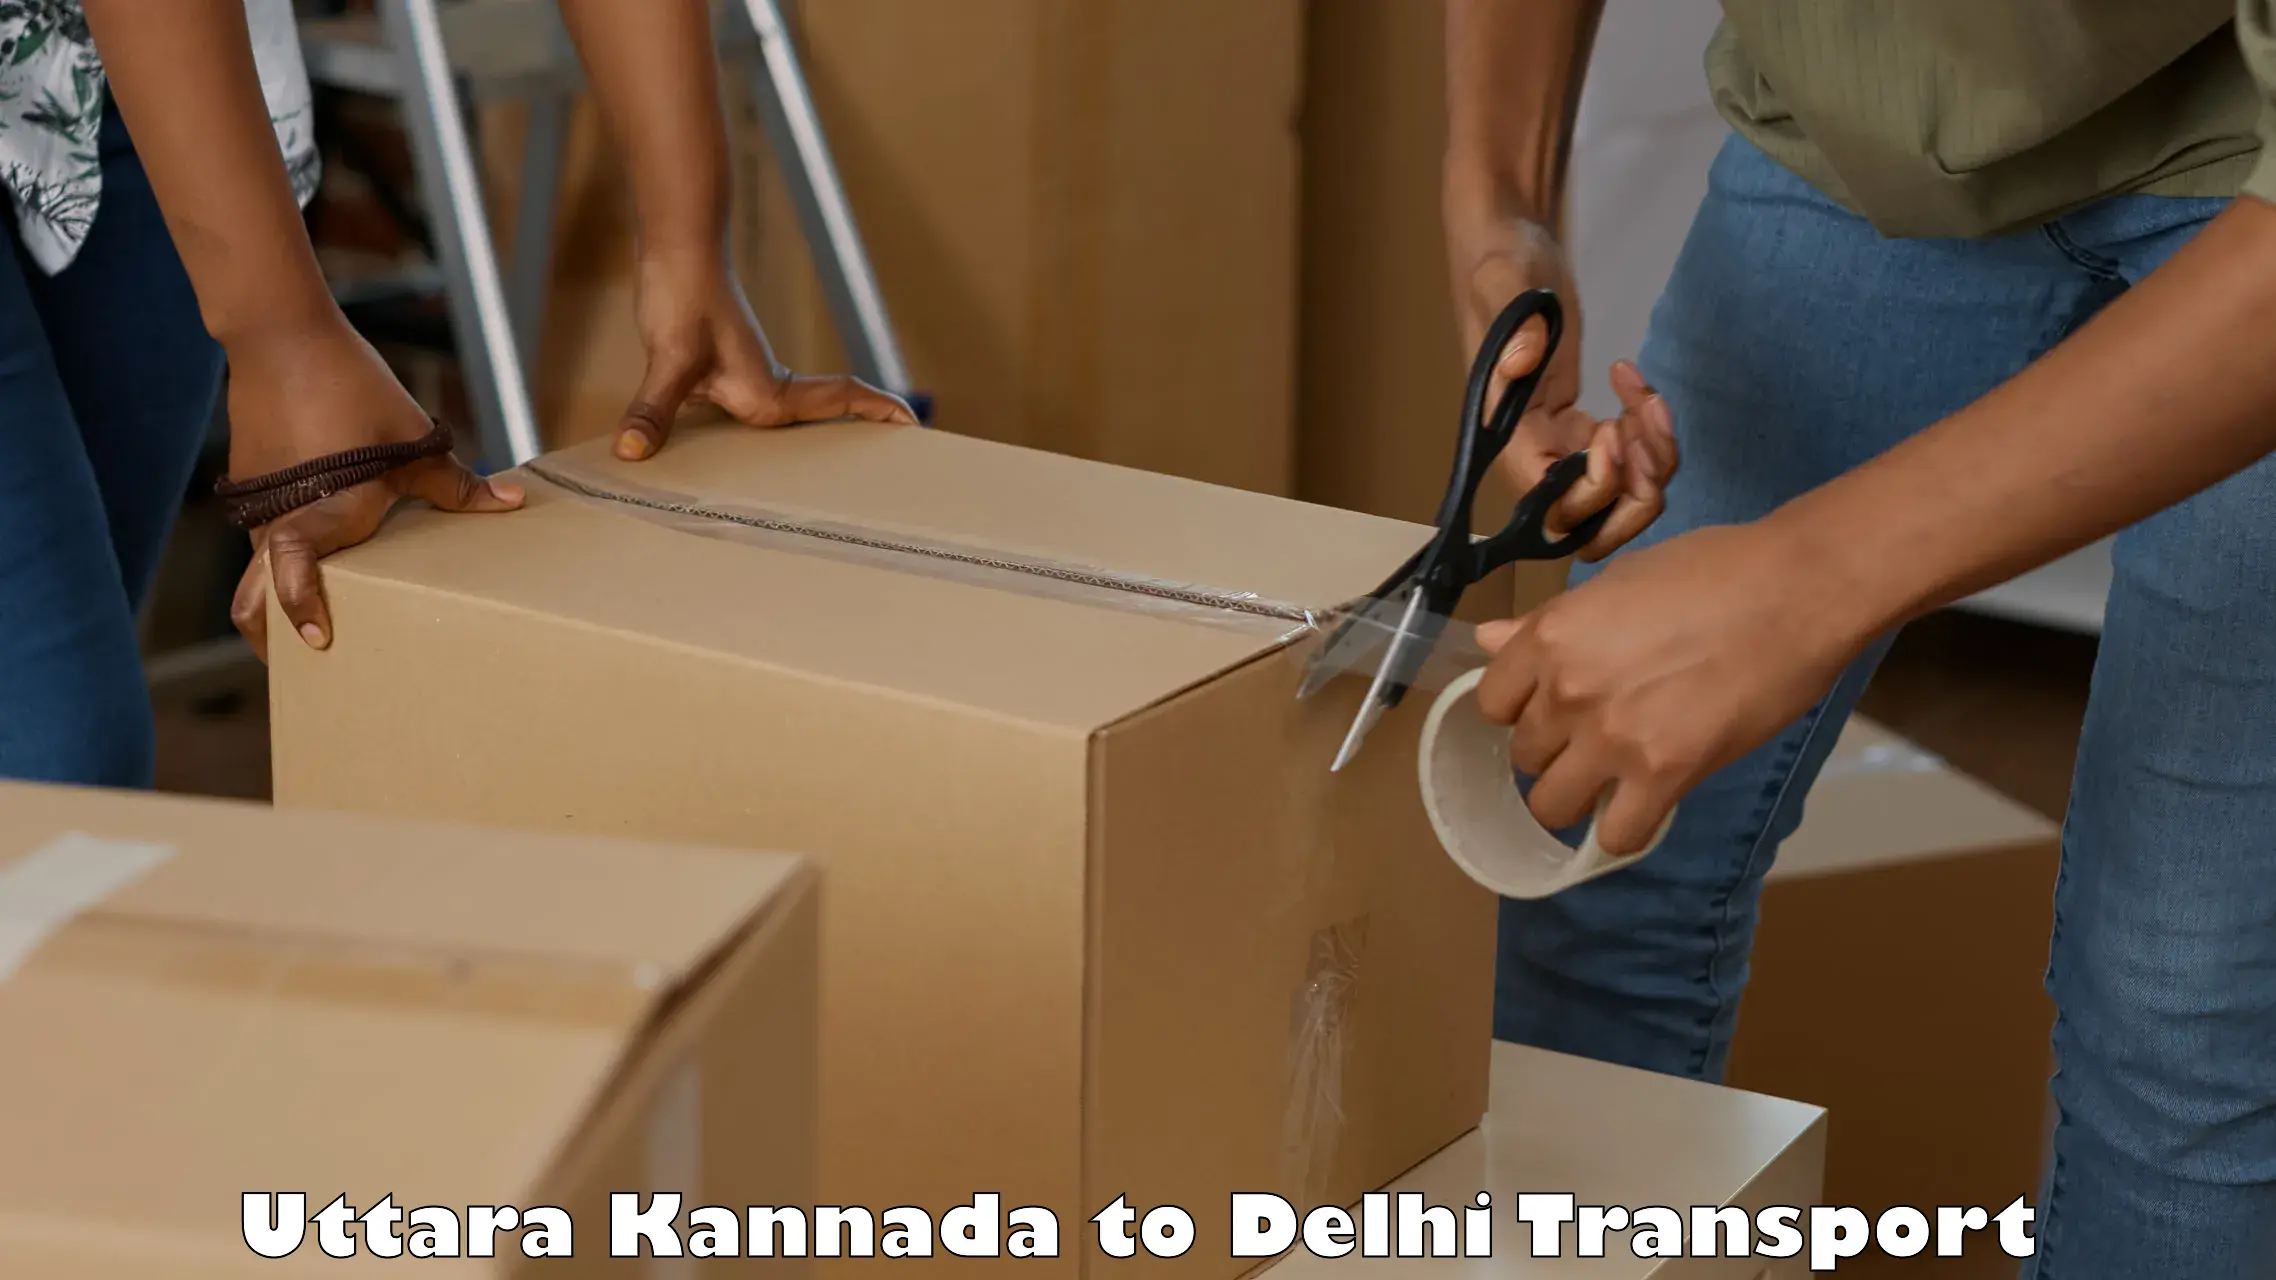 Cargo transport services Uttara Kannada to East Delhi